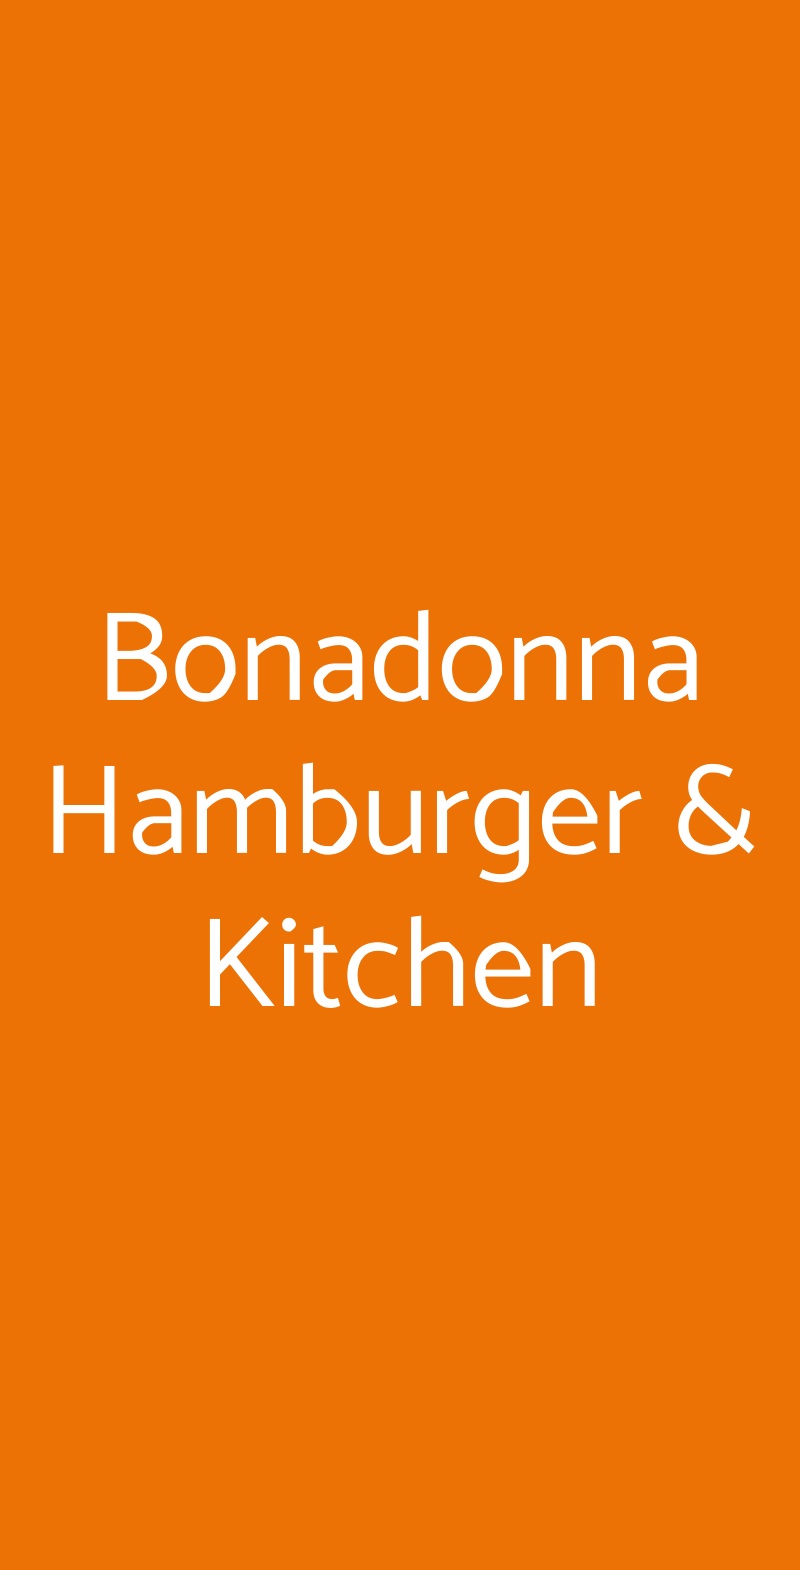 Bonadonna Hamburger & Kitchen Milano menù 1 pagina